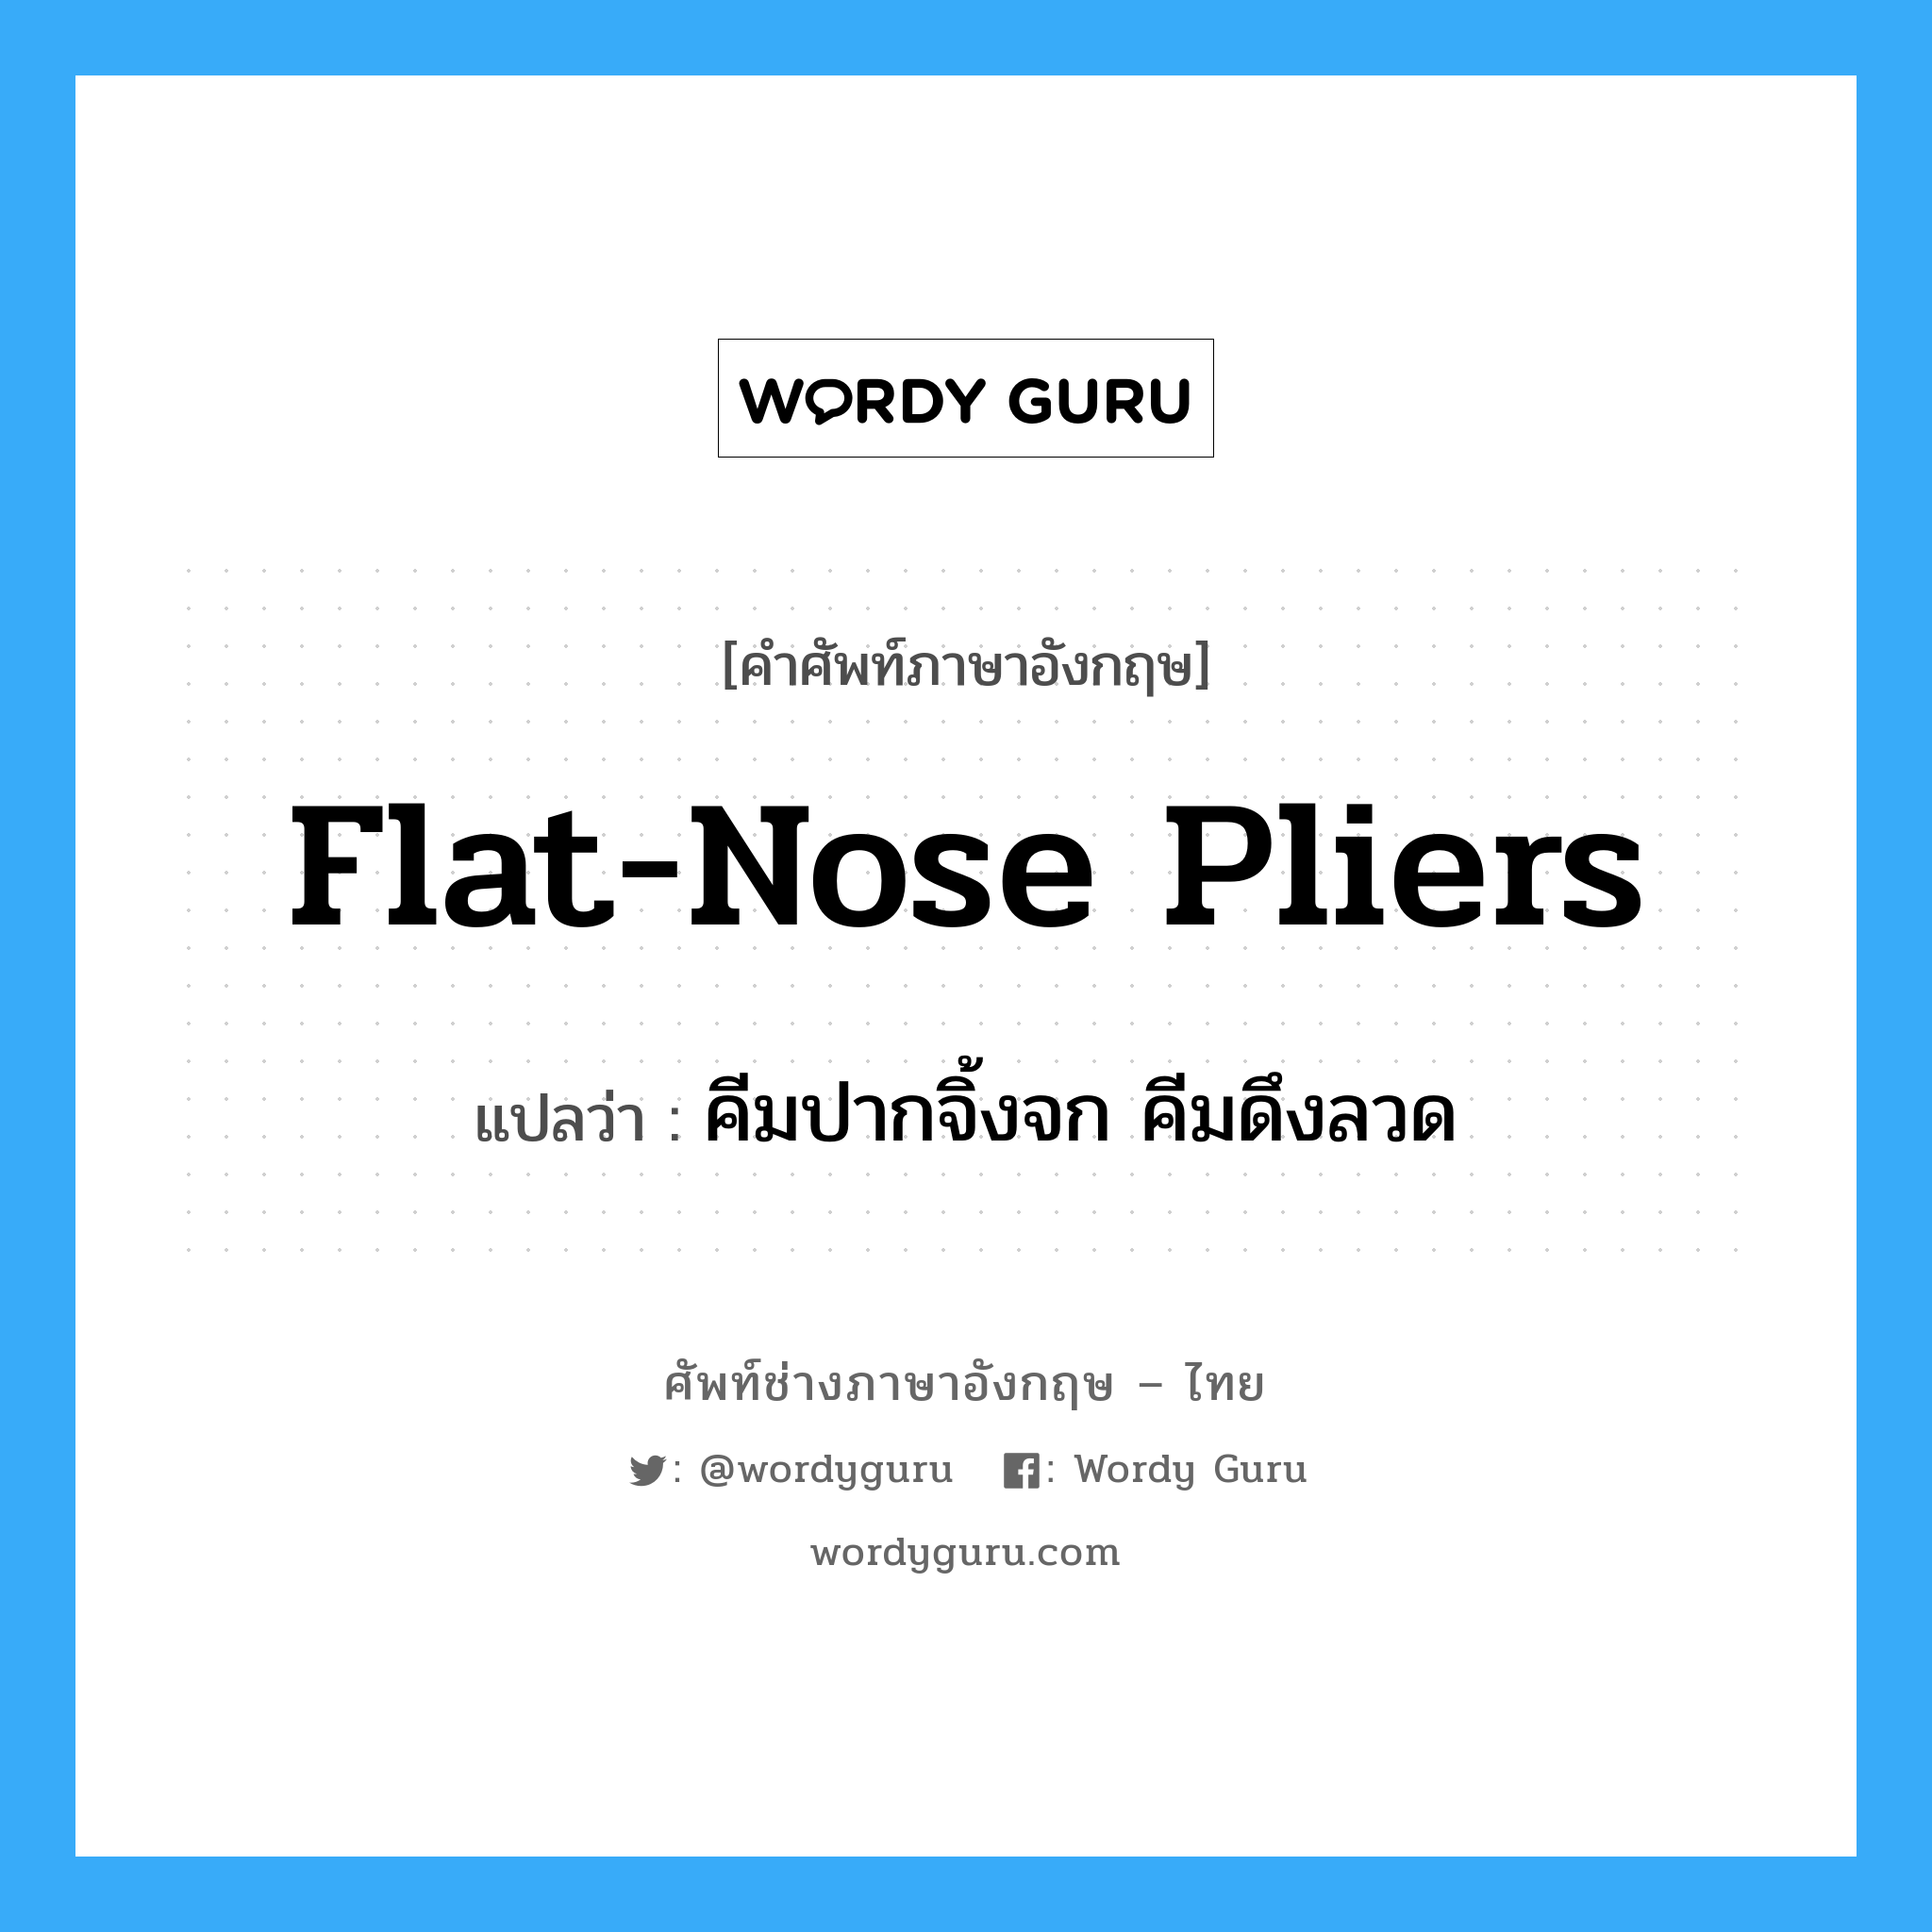 flat-nose pliers แปลว่า?, คำศัพท์ช่างภาษาอังกฤษ - ไทย flat-nose pliers คำศัพท์ภาษาอังกฤษ flat-nose pliers แปลว่า คีมปากจิ้งจก คีมดึงลวด